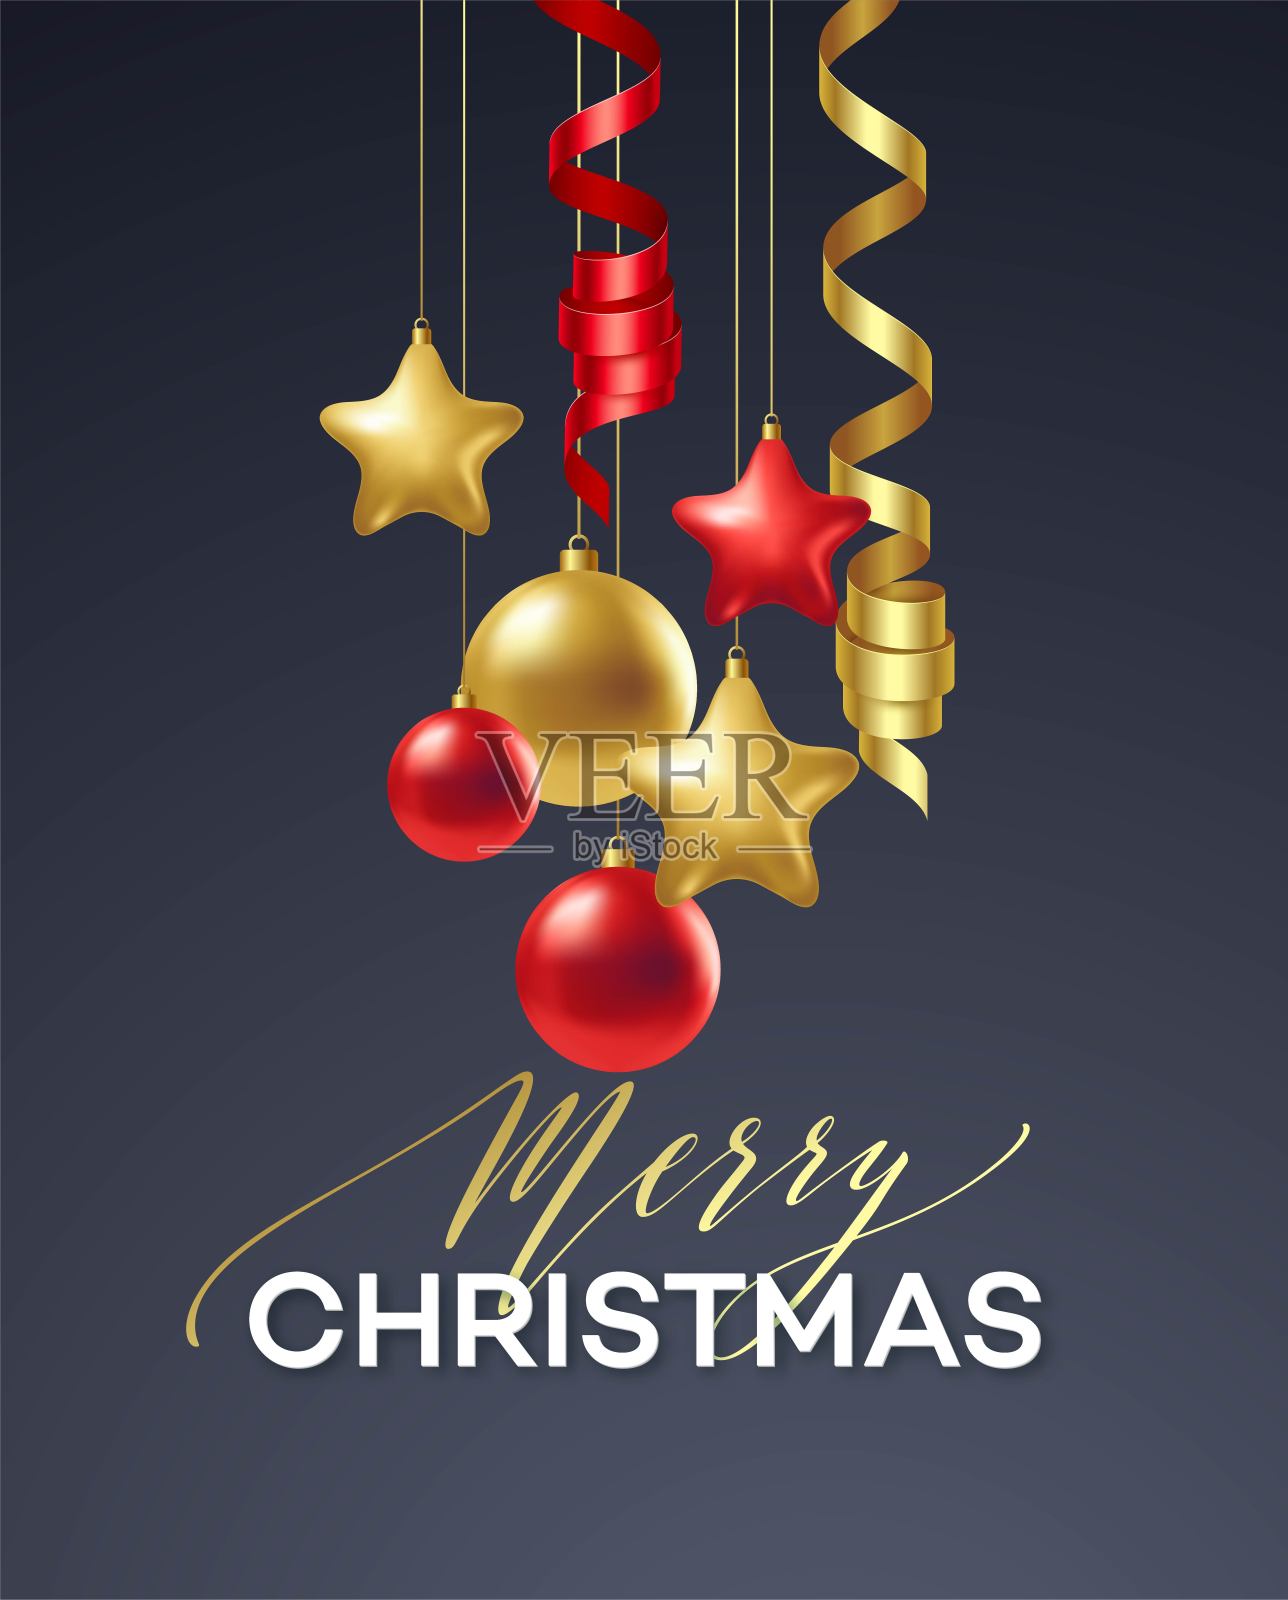 海报圣诞快乐。高档书法字体，以金饰装饰的金球为豪华黑色背景。矢量图设计模板素材